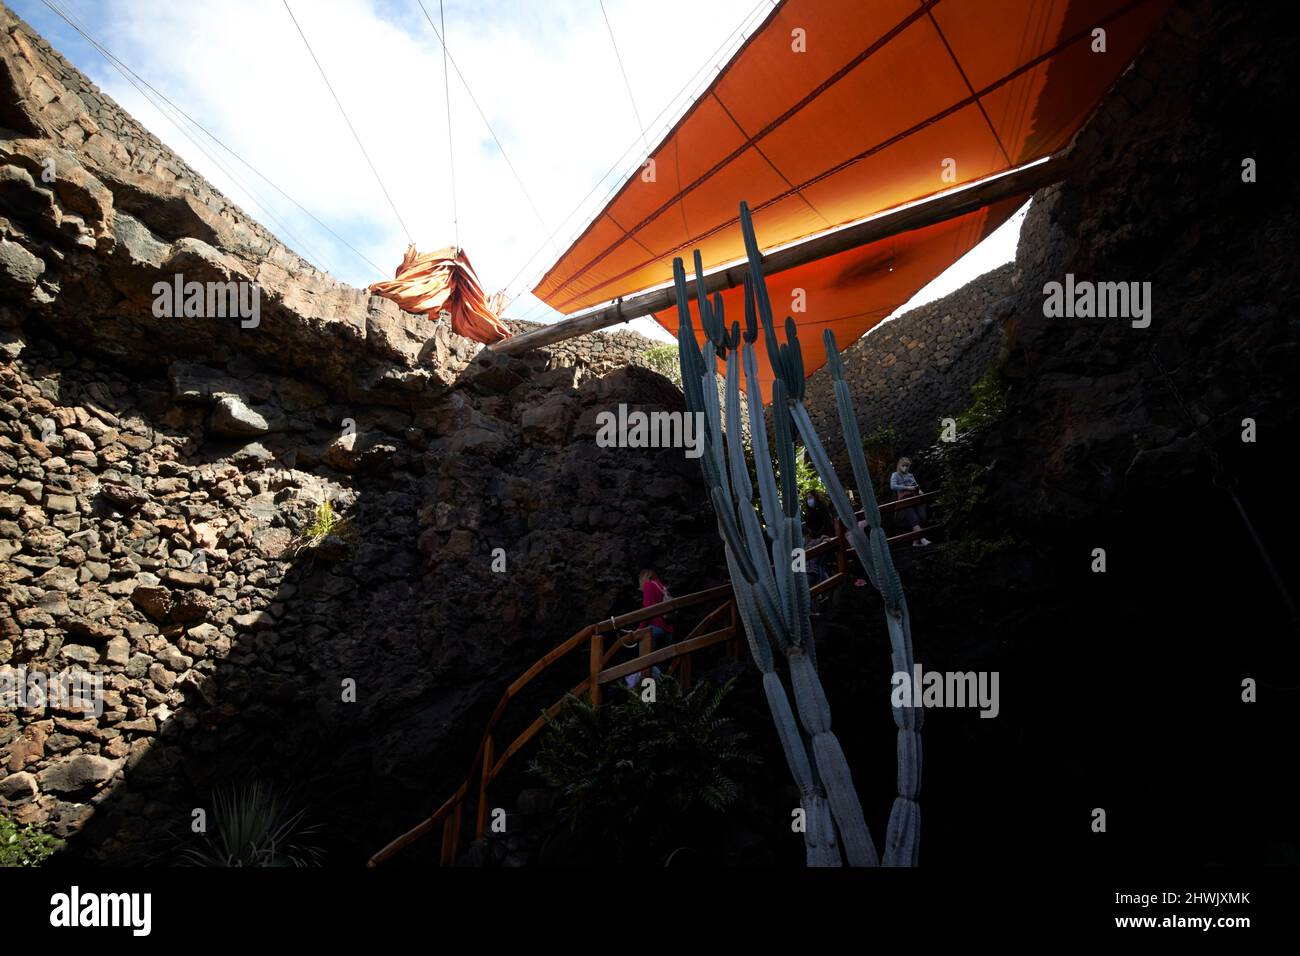 Orangefarbene Segel decken die Öffnung des vulkanischen Jameo chico Tunnels jameos del agua lanzarote, kanarische Inseln, spanien ab Stockfoto